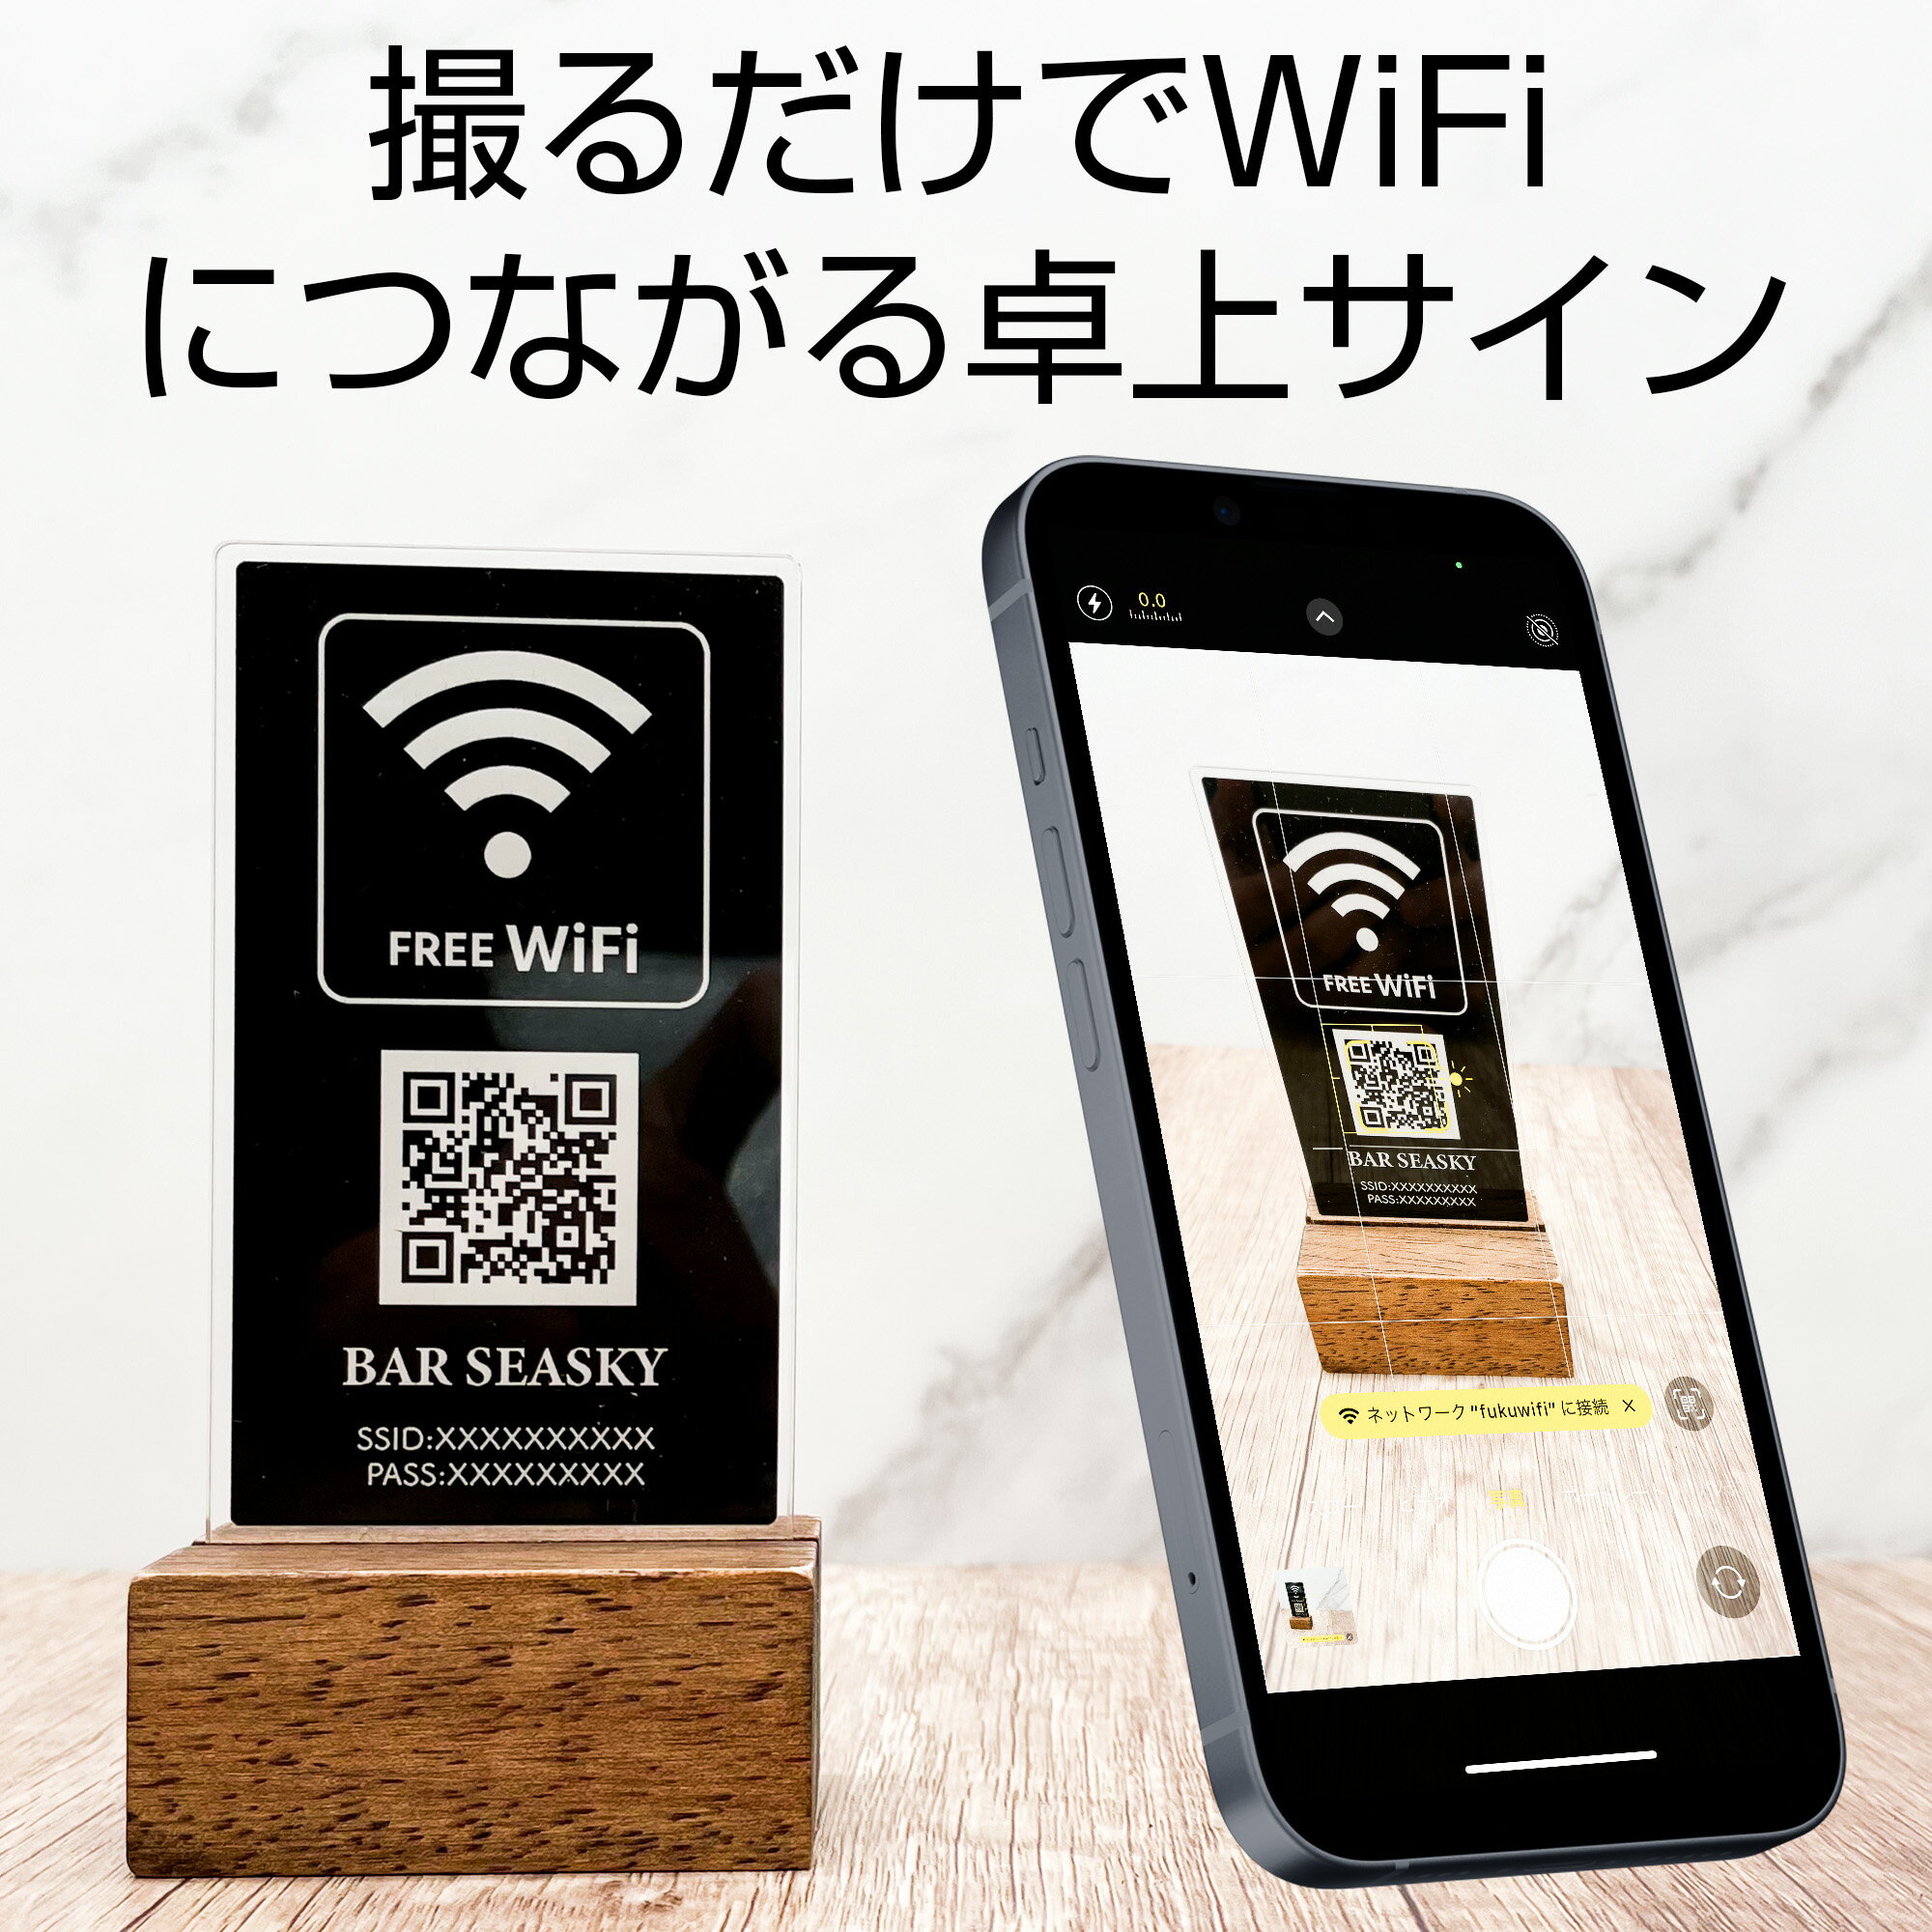 【FREE Wi-Fi】WiFi オーダー 店名入 サインプレート スリム ブラック 卓上サイン ワイファイ おしゃれ QRコード スマホで読み取るだけ 2色